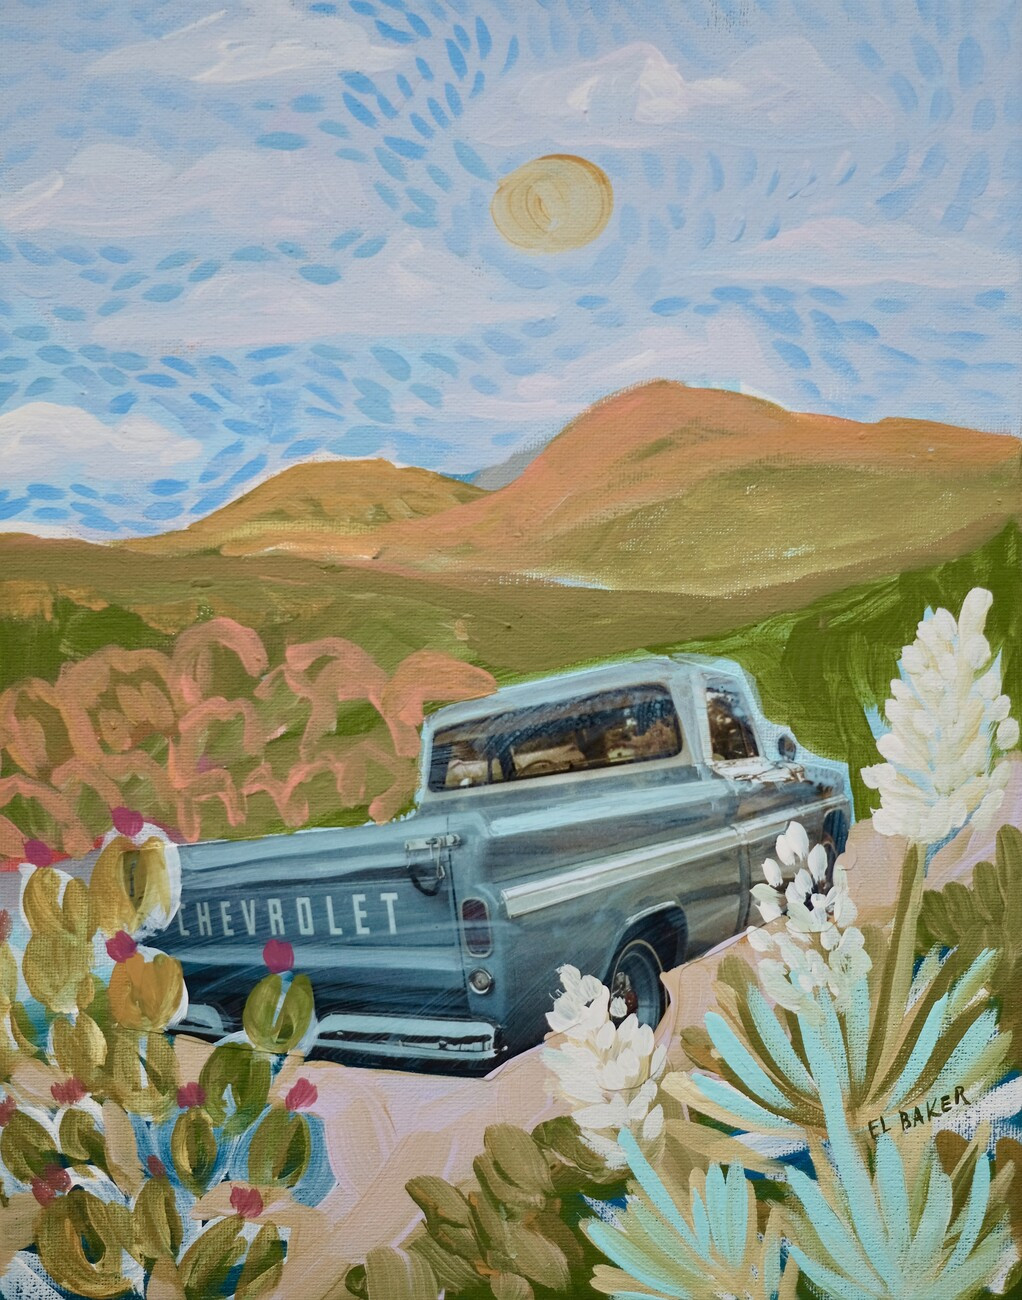 Eleanor Baker Ilustrace Chevrolet on the road, Eleanor Baker, (30 x 40 cm)